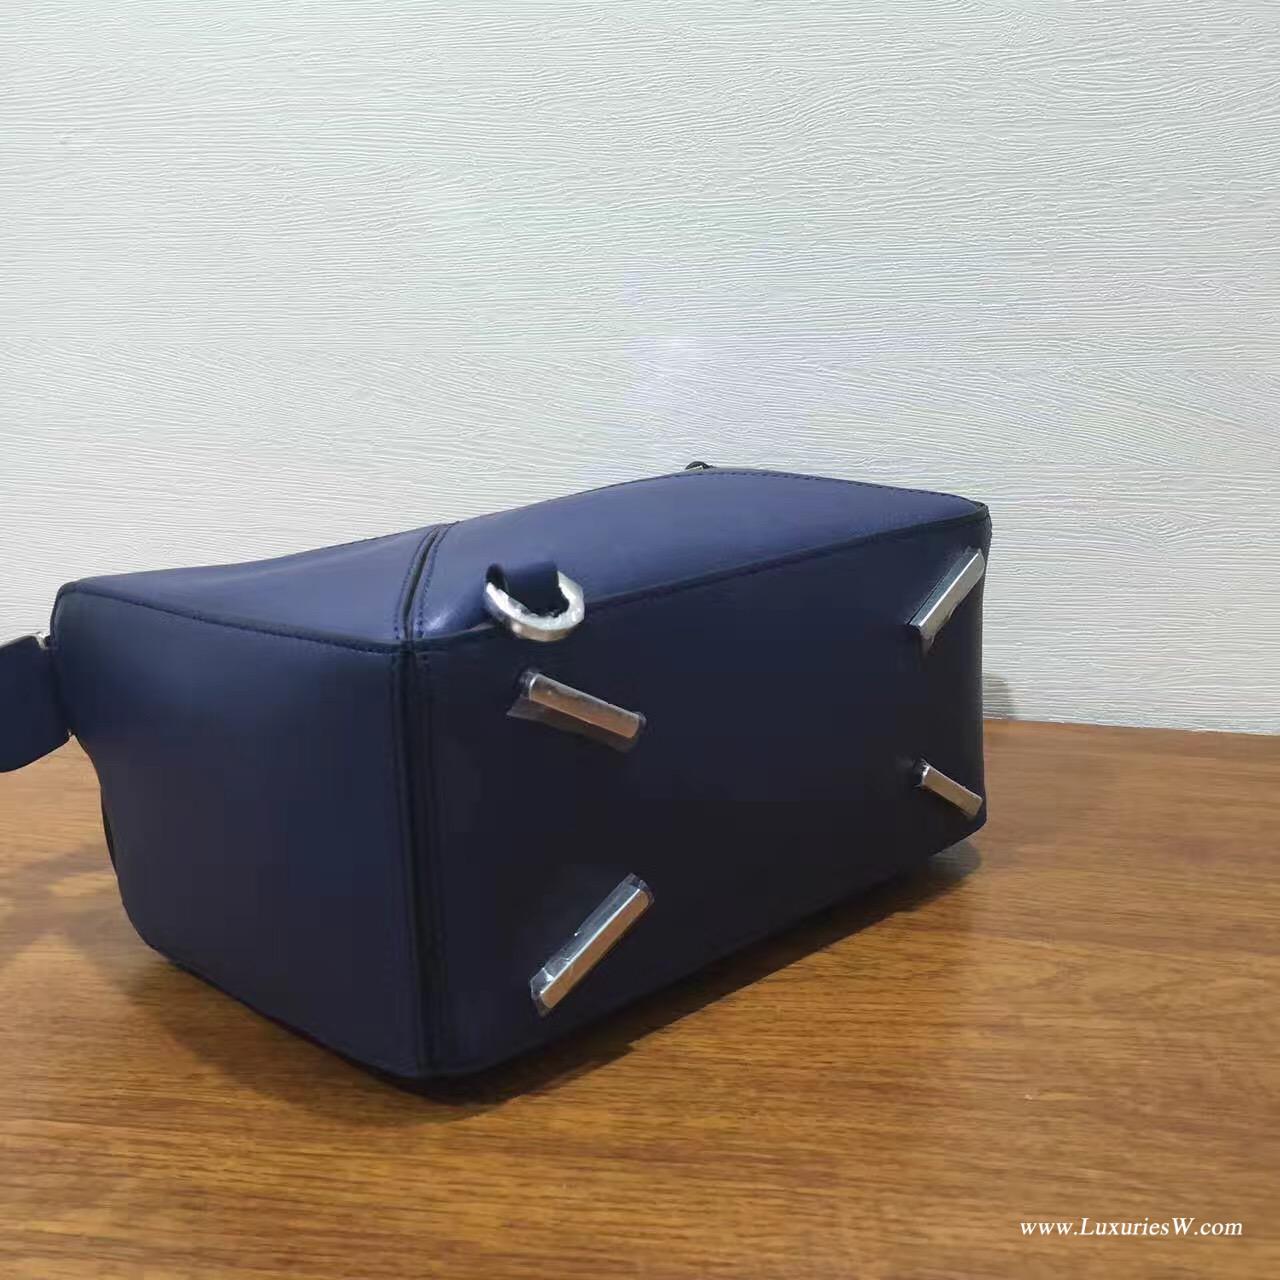 羅意威LOEWE包包 Mini Puzzle Bag 深蓝色 長方體形狀 折疊幾何包